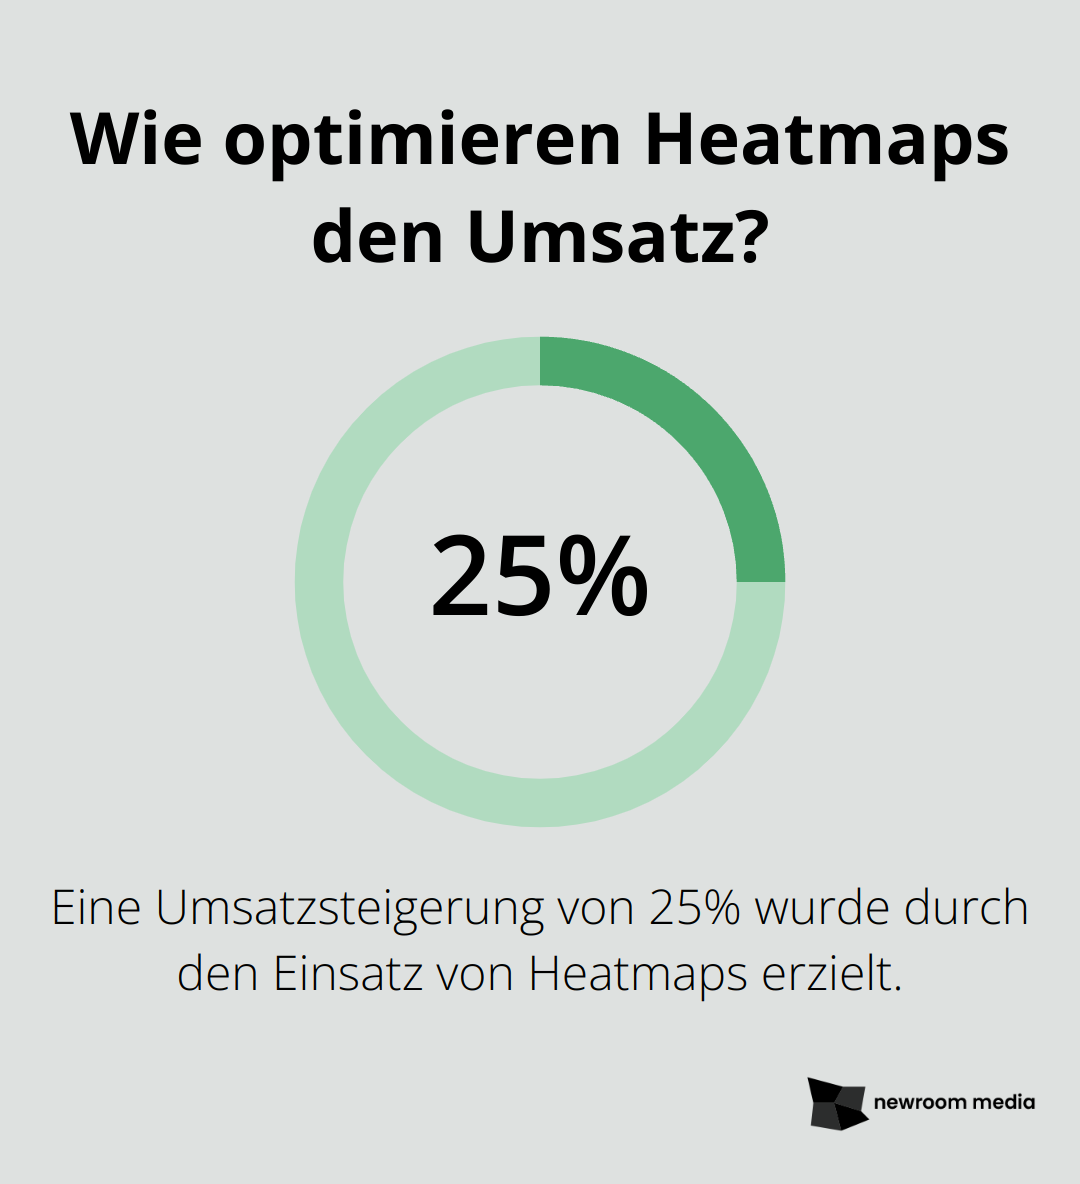 Wie optimieren Heatmaps den Umsatz?